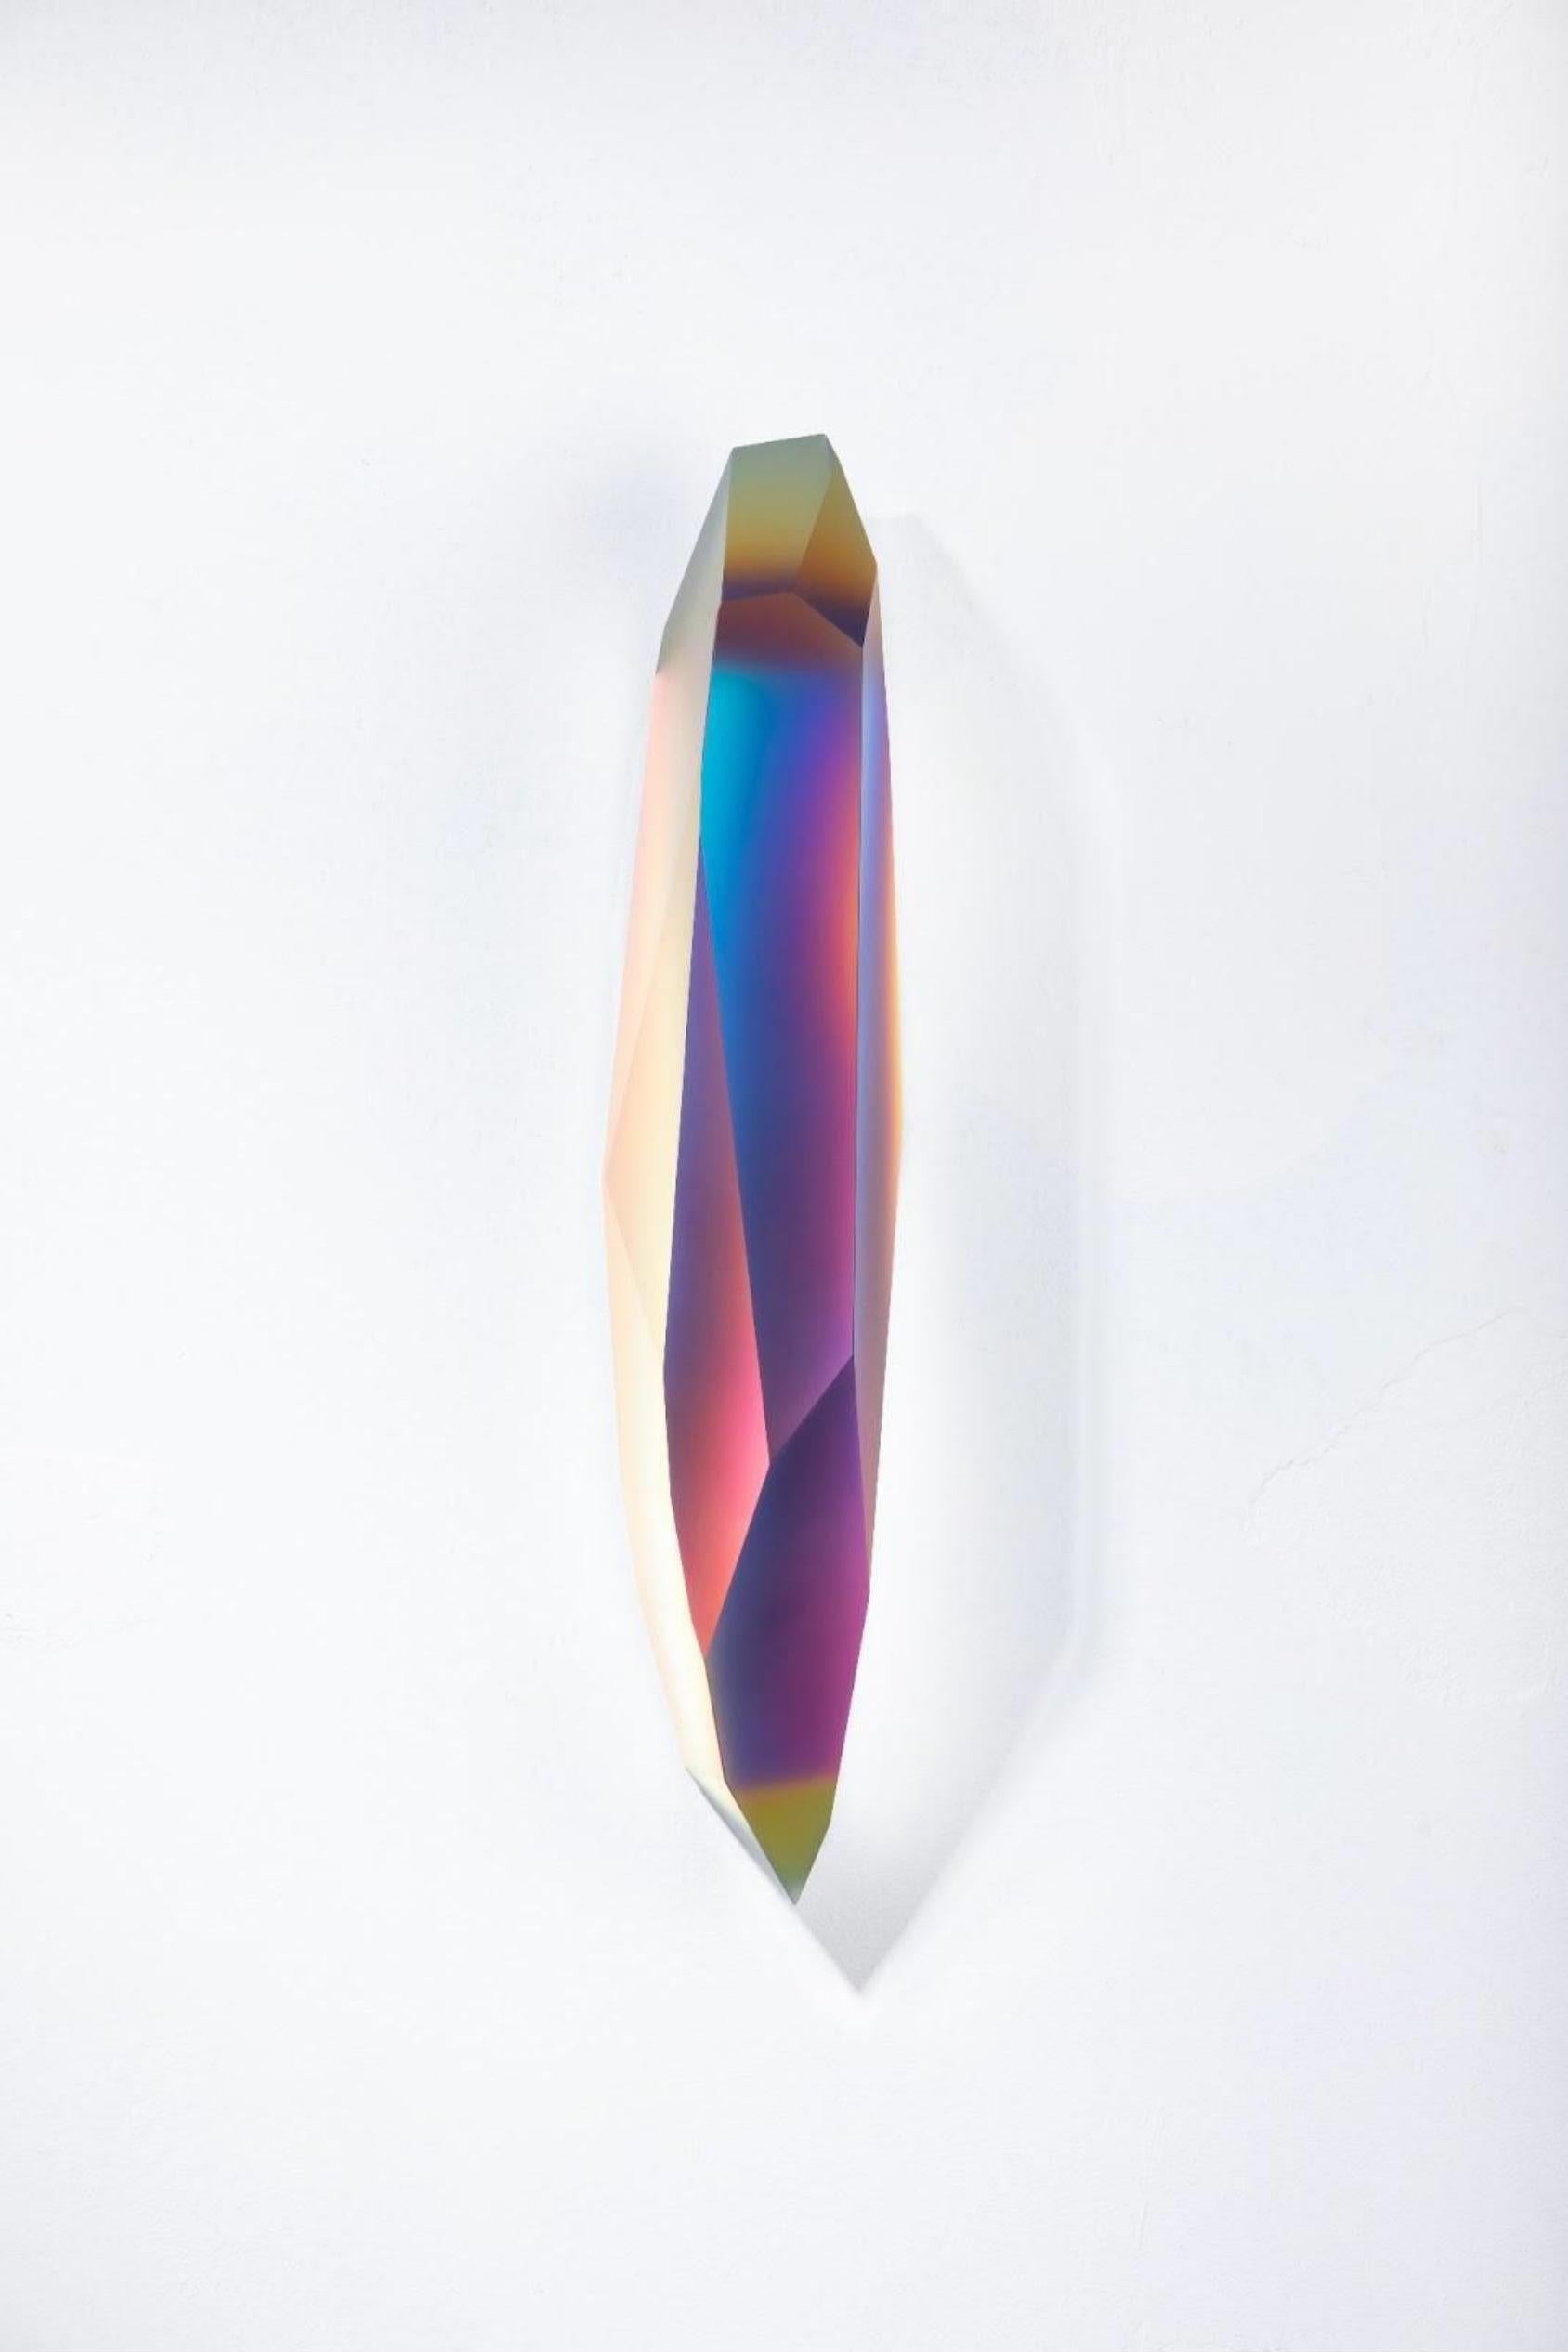 Pretty Mirage 0205 von Lukas Novak
Abmessungen: B 16 x T 16 x H 63 cm
MATERIALIEN: Geschliffenes Glas, Kristall, Farbverlauf

Die Pretty Mirage Serie ist aus Wandkristallen gefertigt. Es ist eine einzigartige Komposition aus Glasschliffen und einem